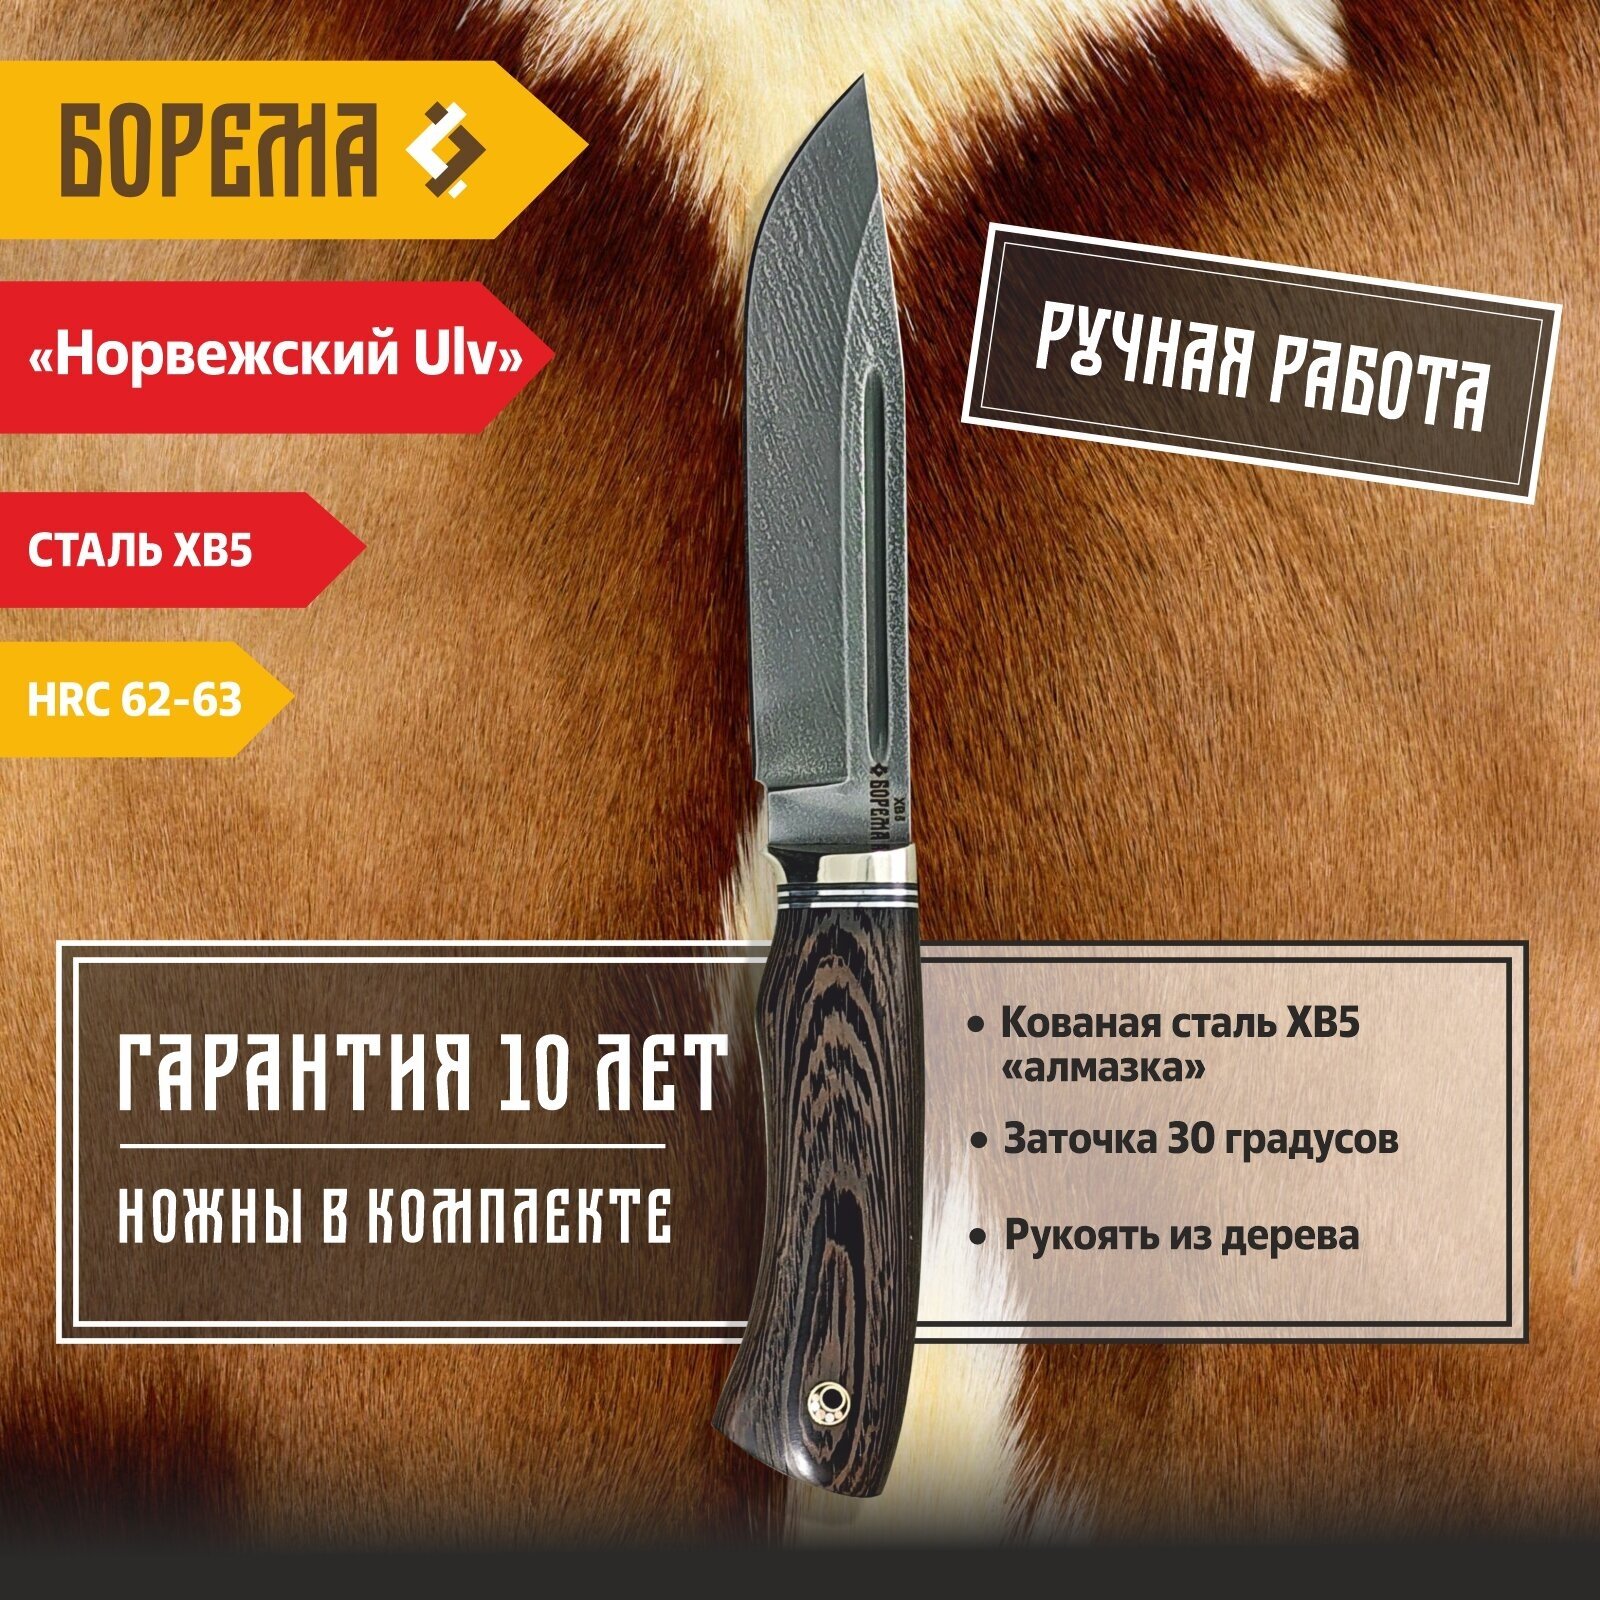 Охотничий нож фиксированный Борема "Норвежский Ulv", длина лезвия 15.5 см, кованая сталь ХВ5, нож туристический, нож ручной работы